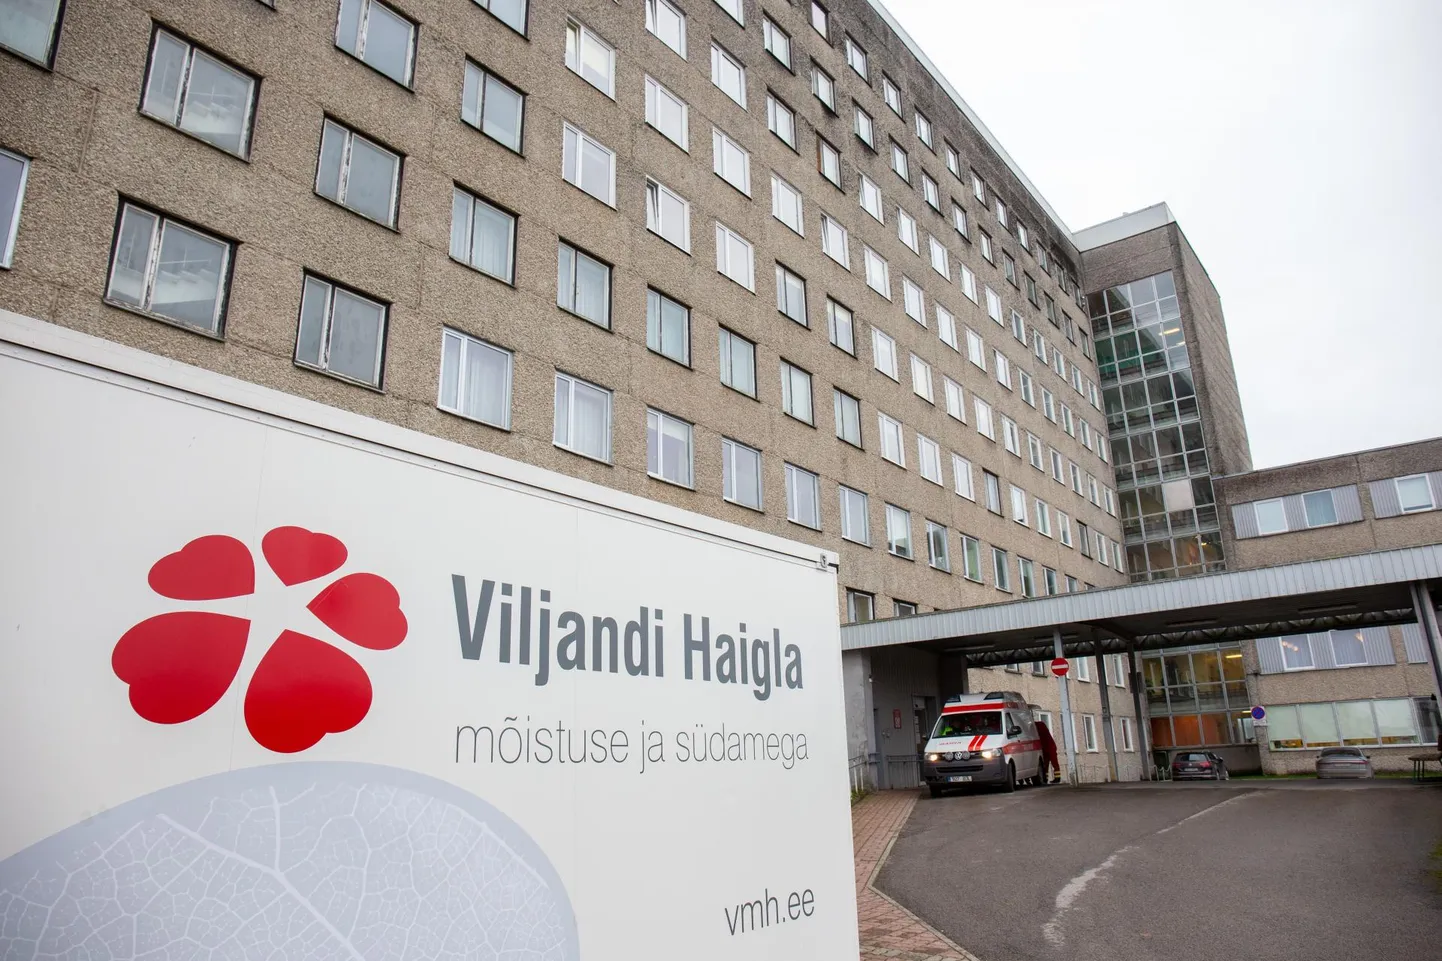 Работники, выступившие против увольнения непривитых сотрудников Вильяндиской больницы, обратились к руководству больницы с требованием продолжить тестирование.